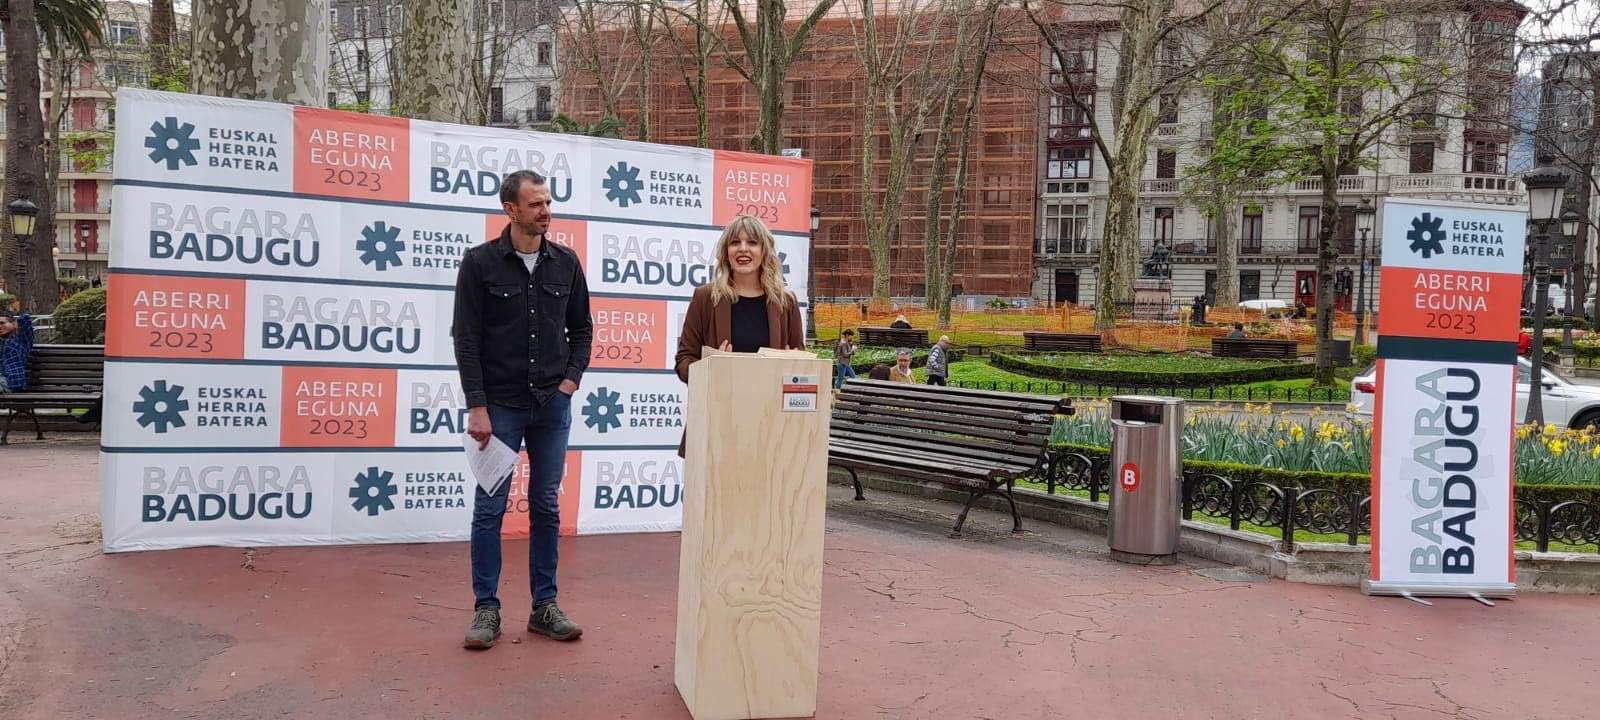 PNV, EH Bildu y Podemos asisten al acto de este sábado en Bilbao de 'Euskal Herria Batera' en víspera del Aberri Eguna